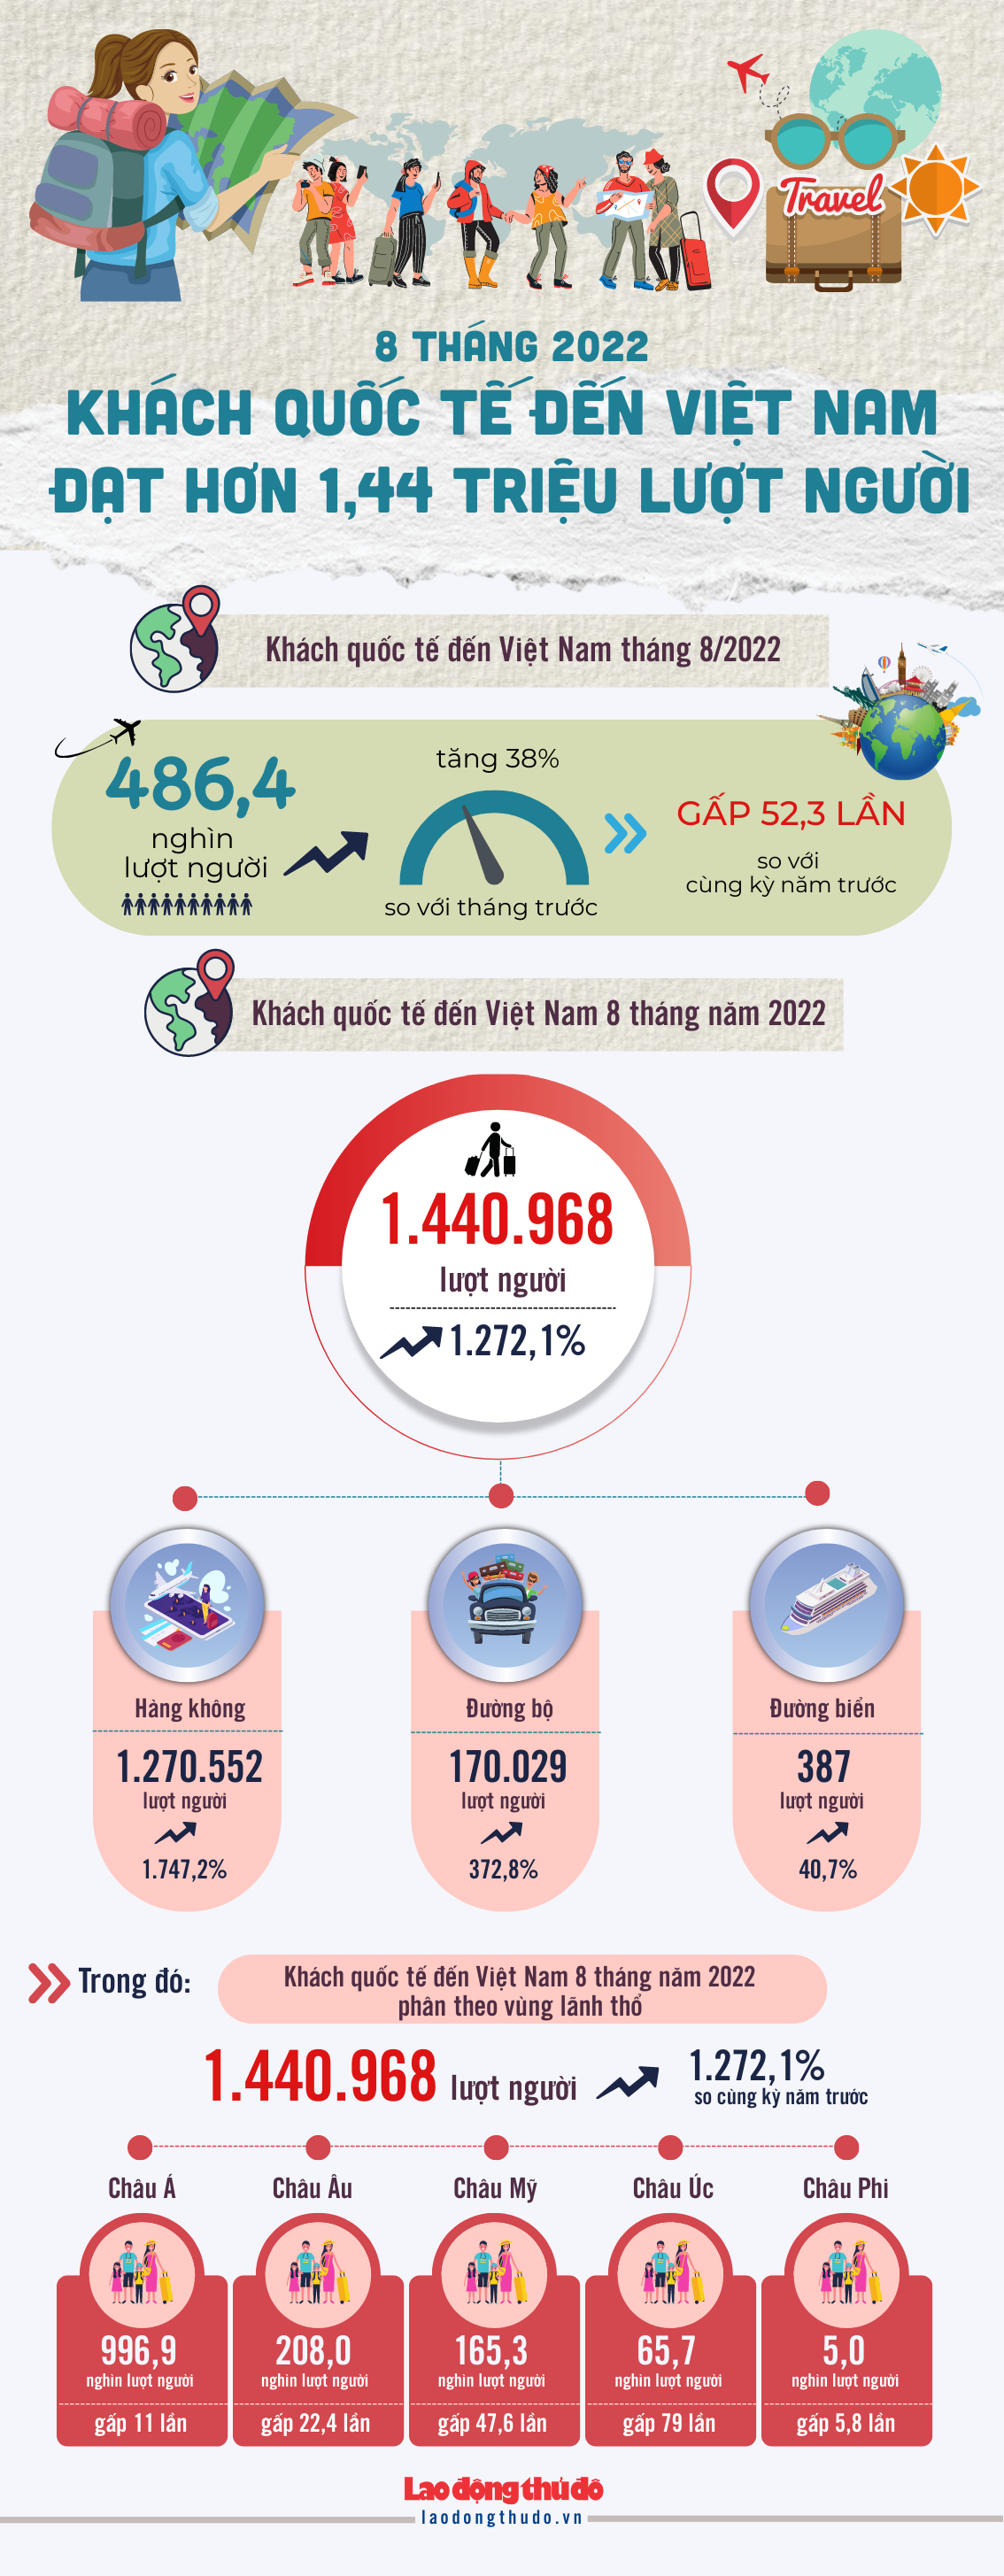 [Infographic] 8 tháng năm 2022: Khách quốc tế đến Việt Nam đạt hơn 1,44 triệu lượt người